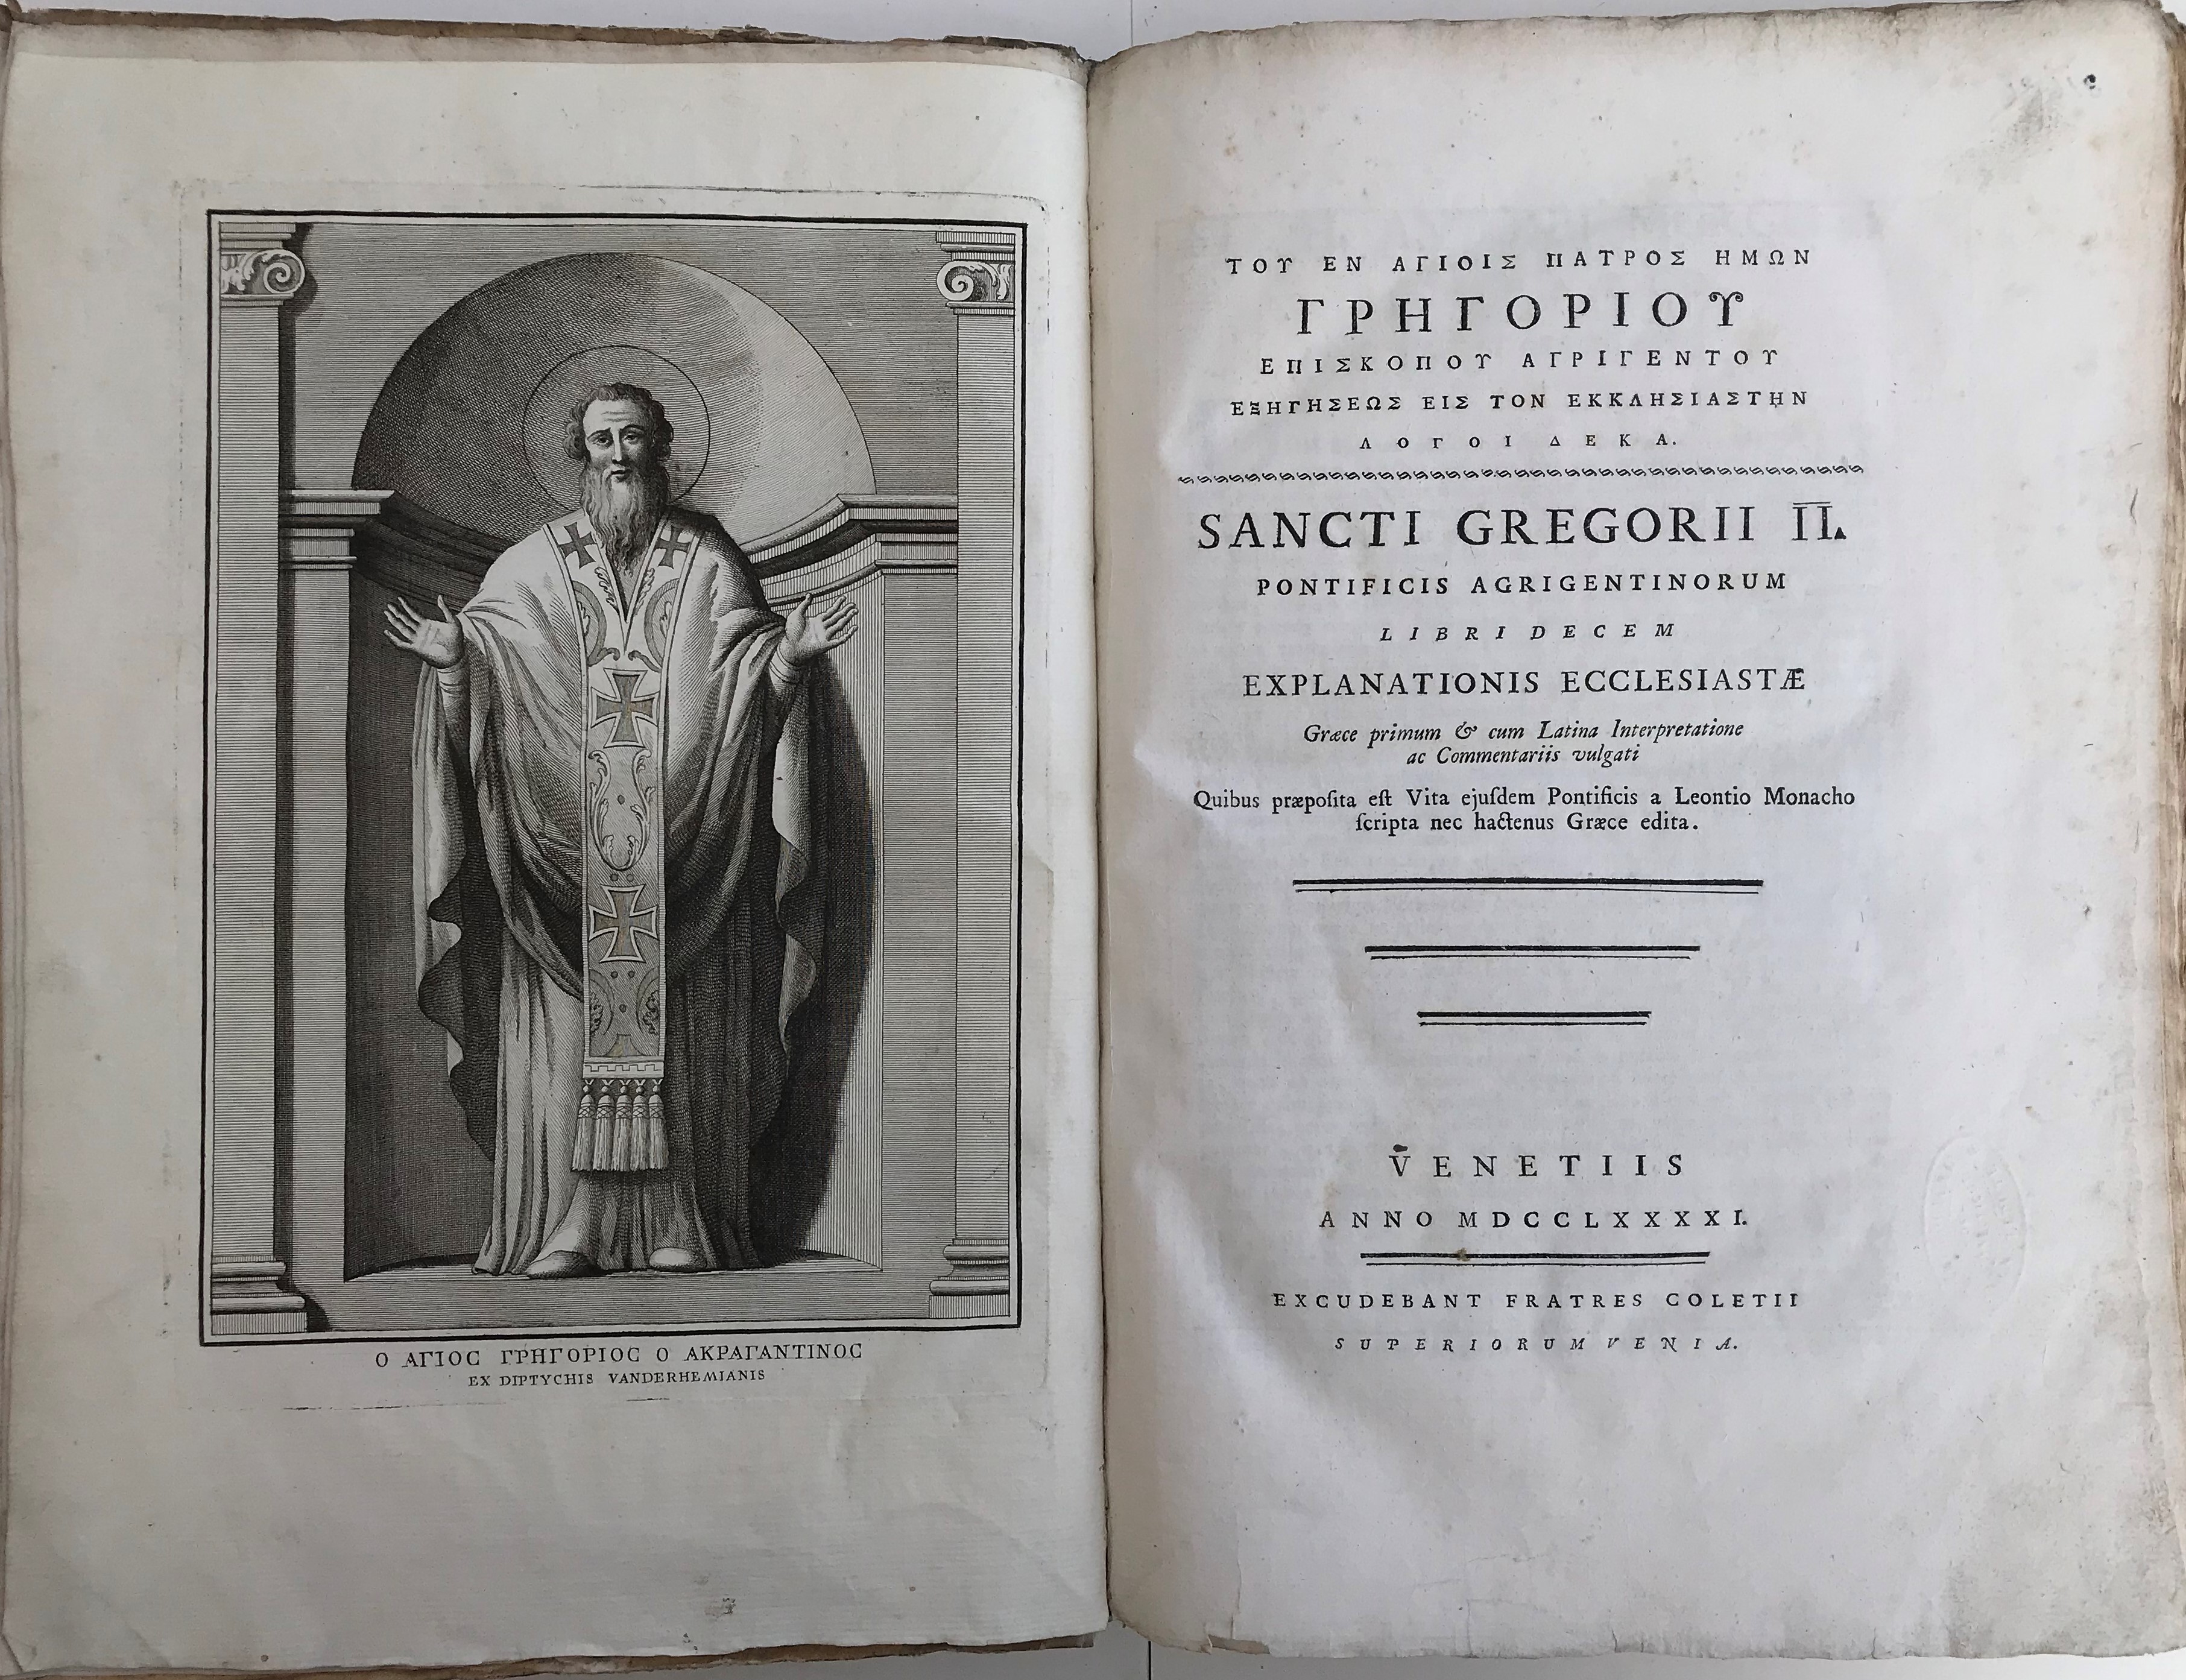 Sancti Gregorii Ii Pontificis Agrigentinorum Libri Decem Explanationis Ecclesiastae Graece